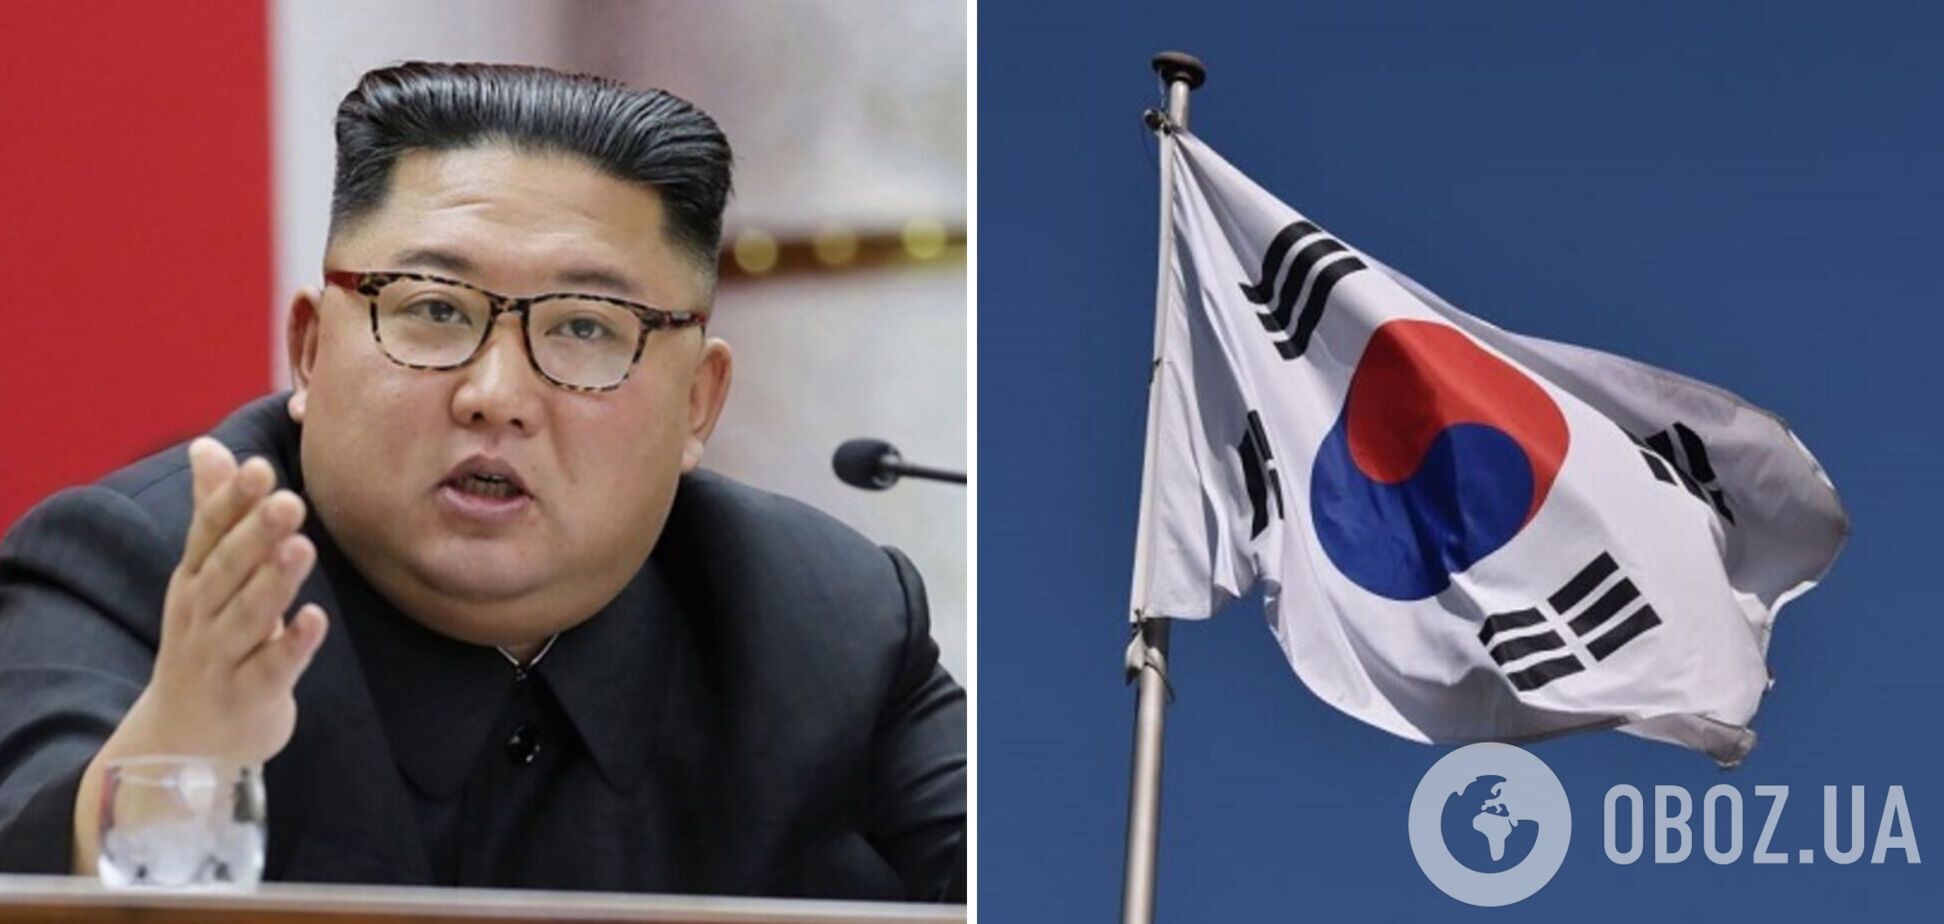 'Последние заявления Ким Чен Ына более агрессивны': КНДР может напасть на Южную Корею в ближайшие месяцы – NYT